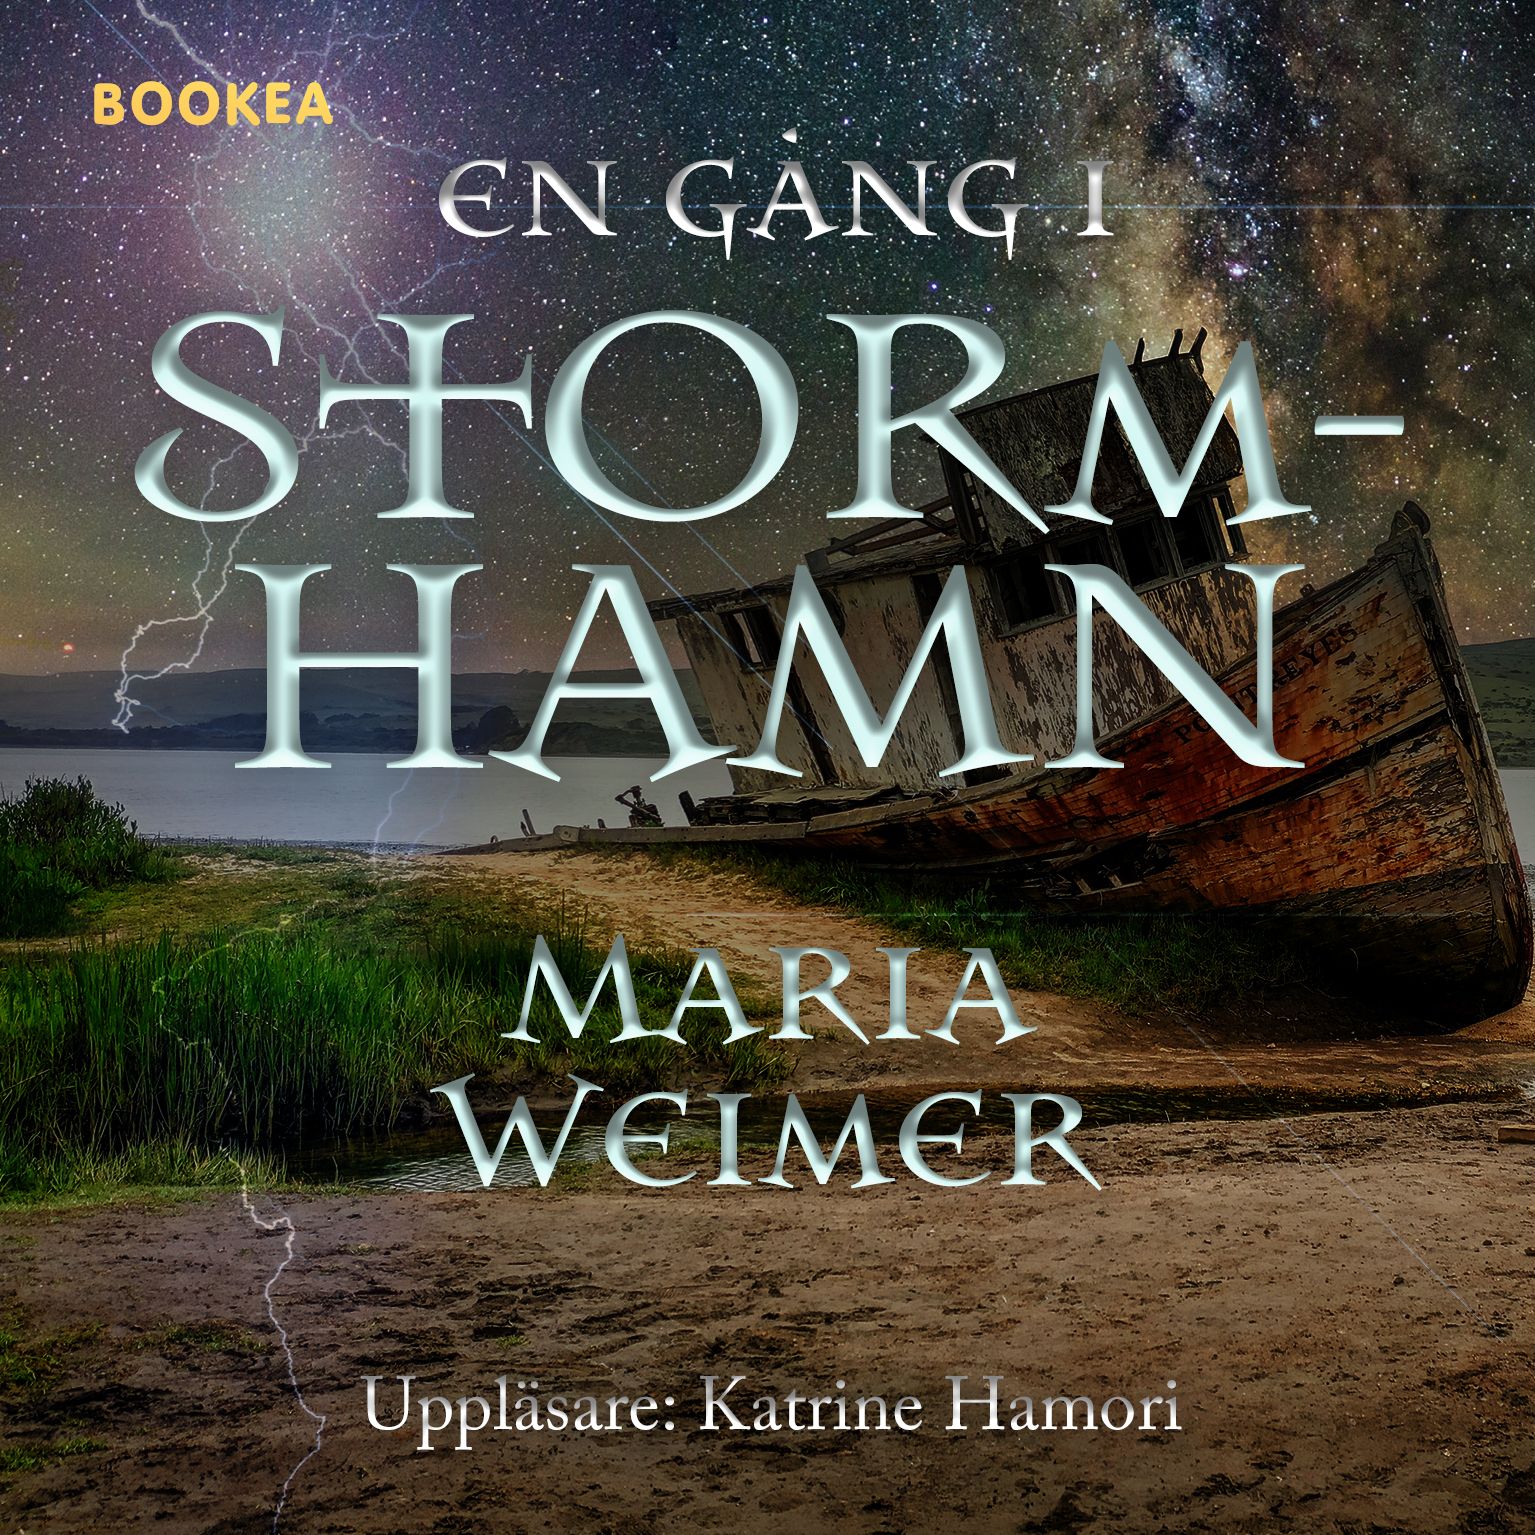 En gång i Stormhamn, ljudbok av Maria Weimer